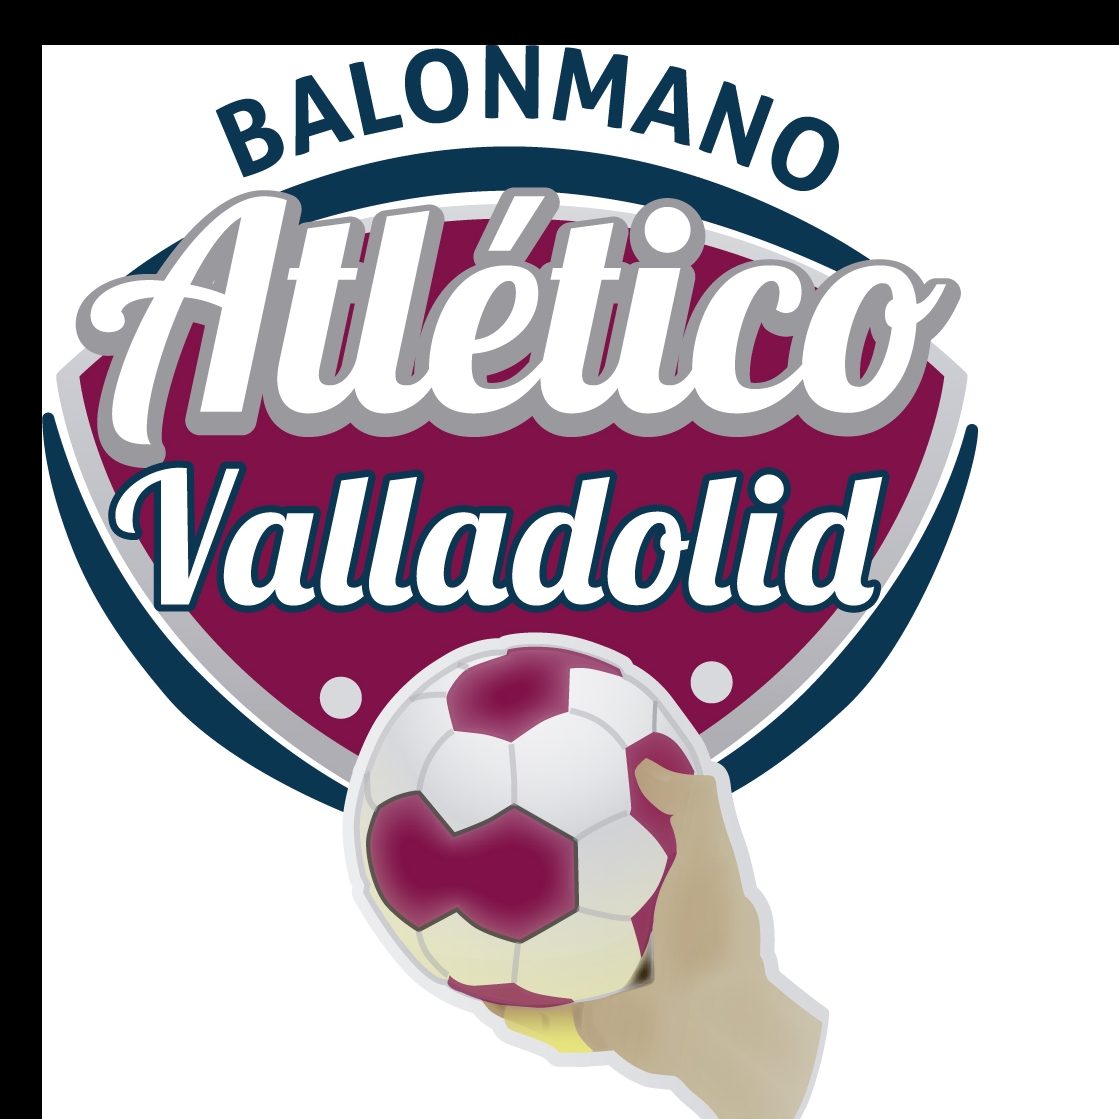 Recoletas Atlético Valladolid